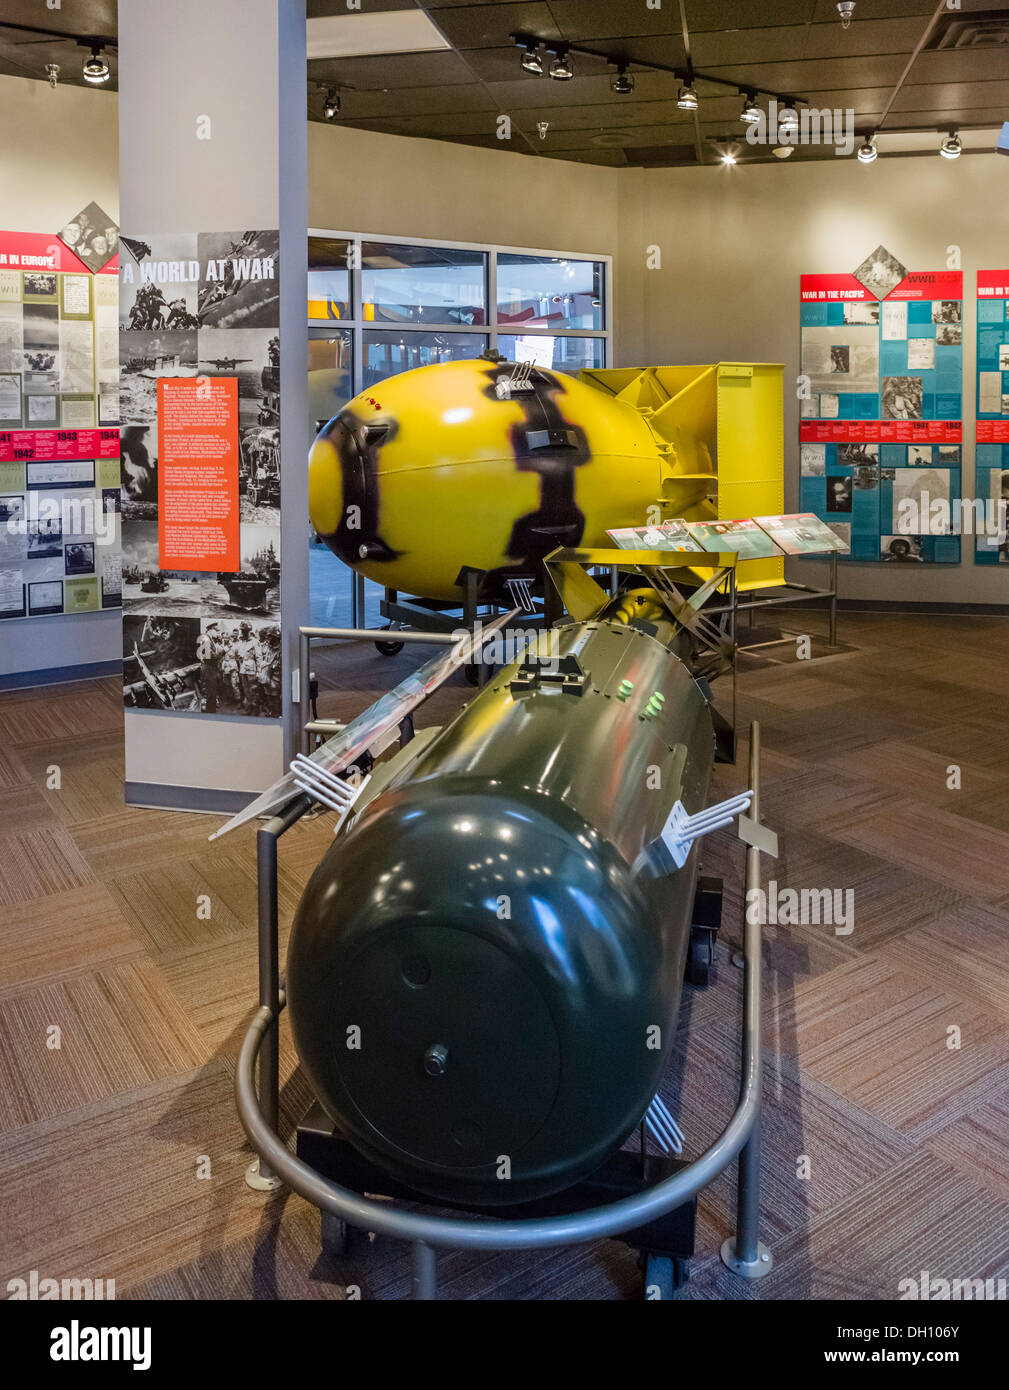 Modelli di bombe atomiche 'Little Boy' e 'Fat Man' scesa in Giappone nella seconda guerra mondiale, Bradbury Science Museum di Los Alamos, Nuovo Messico, STATI UNITI D'AMERICA Foto Stock